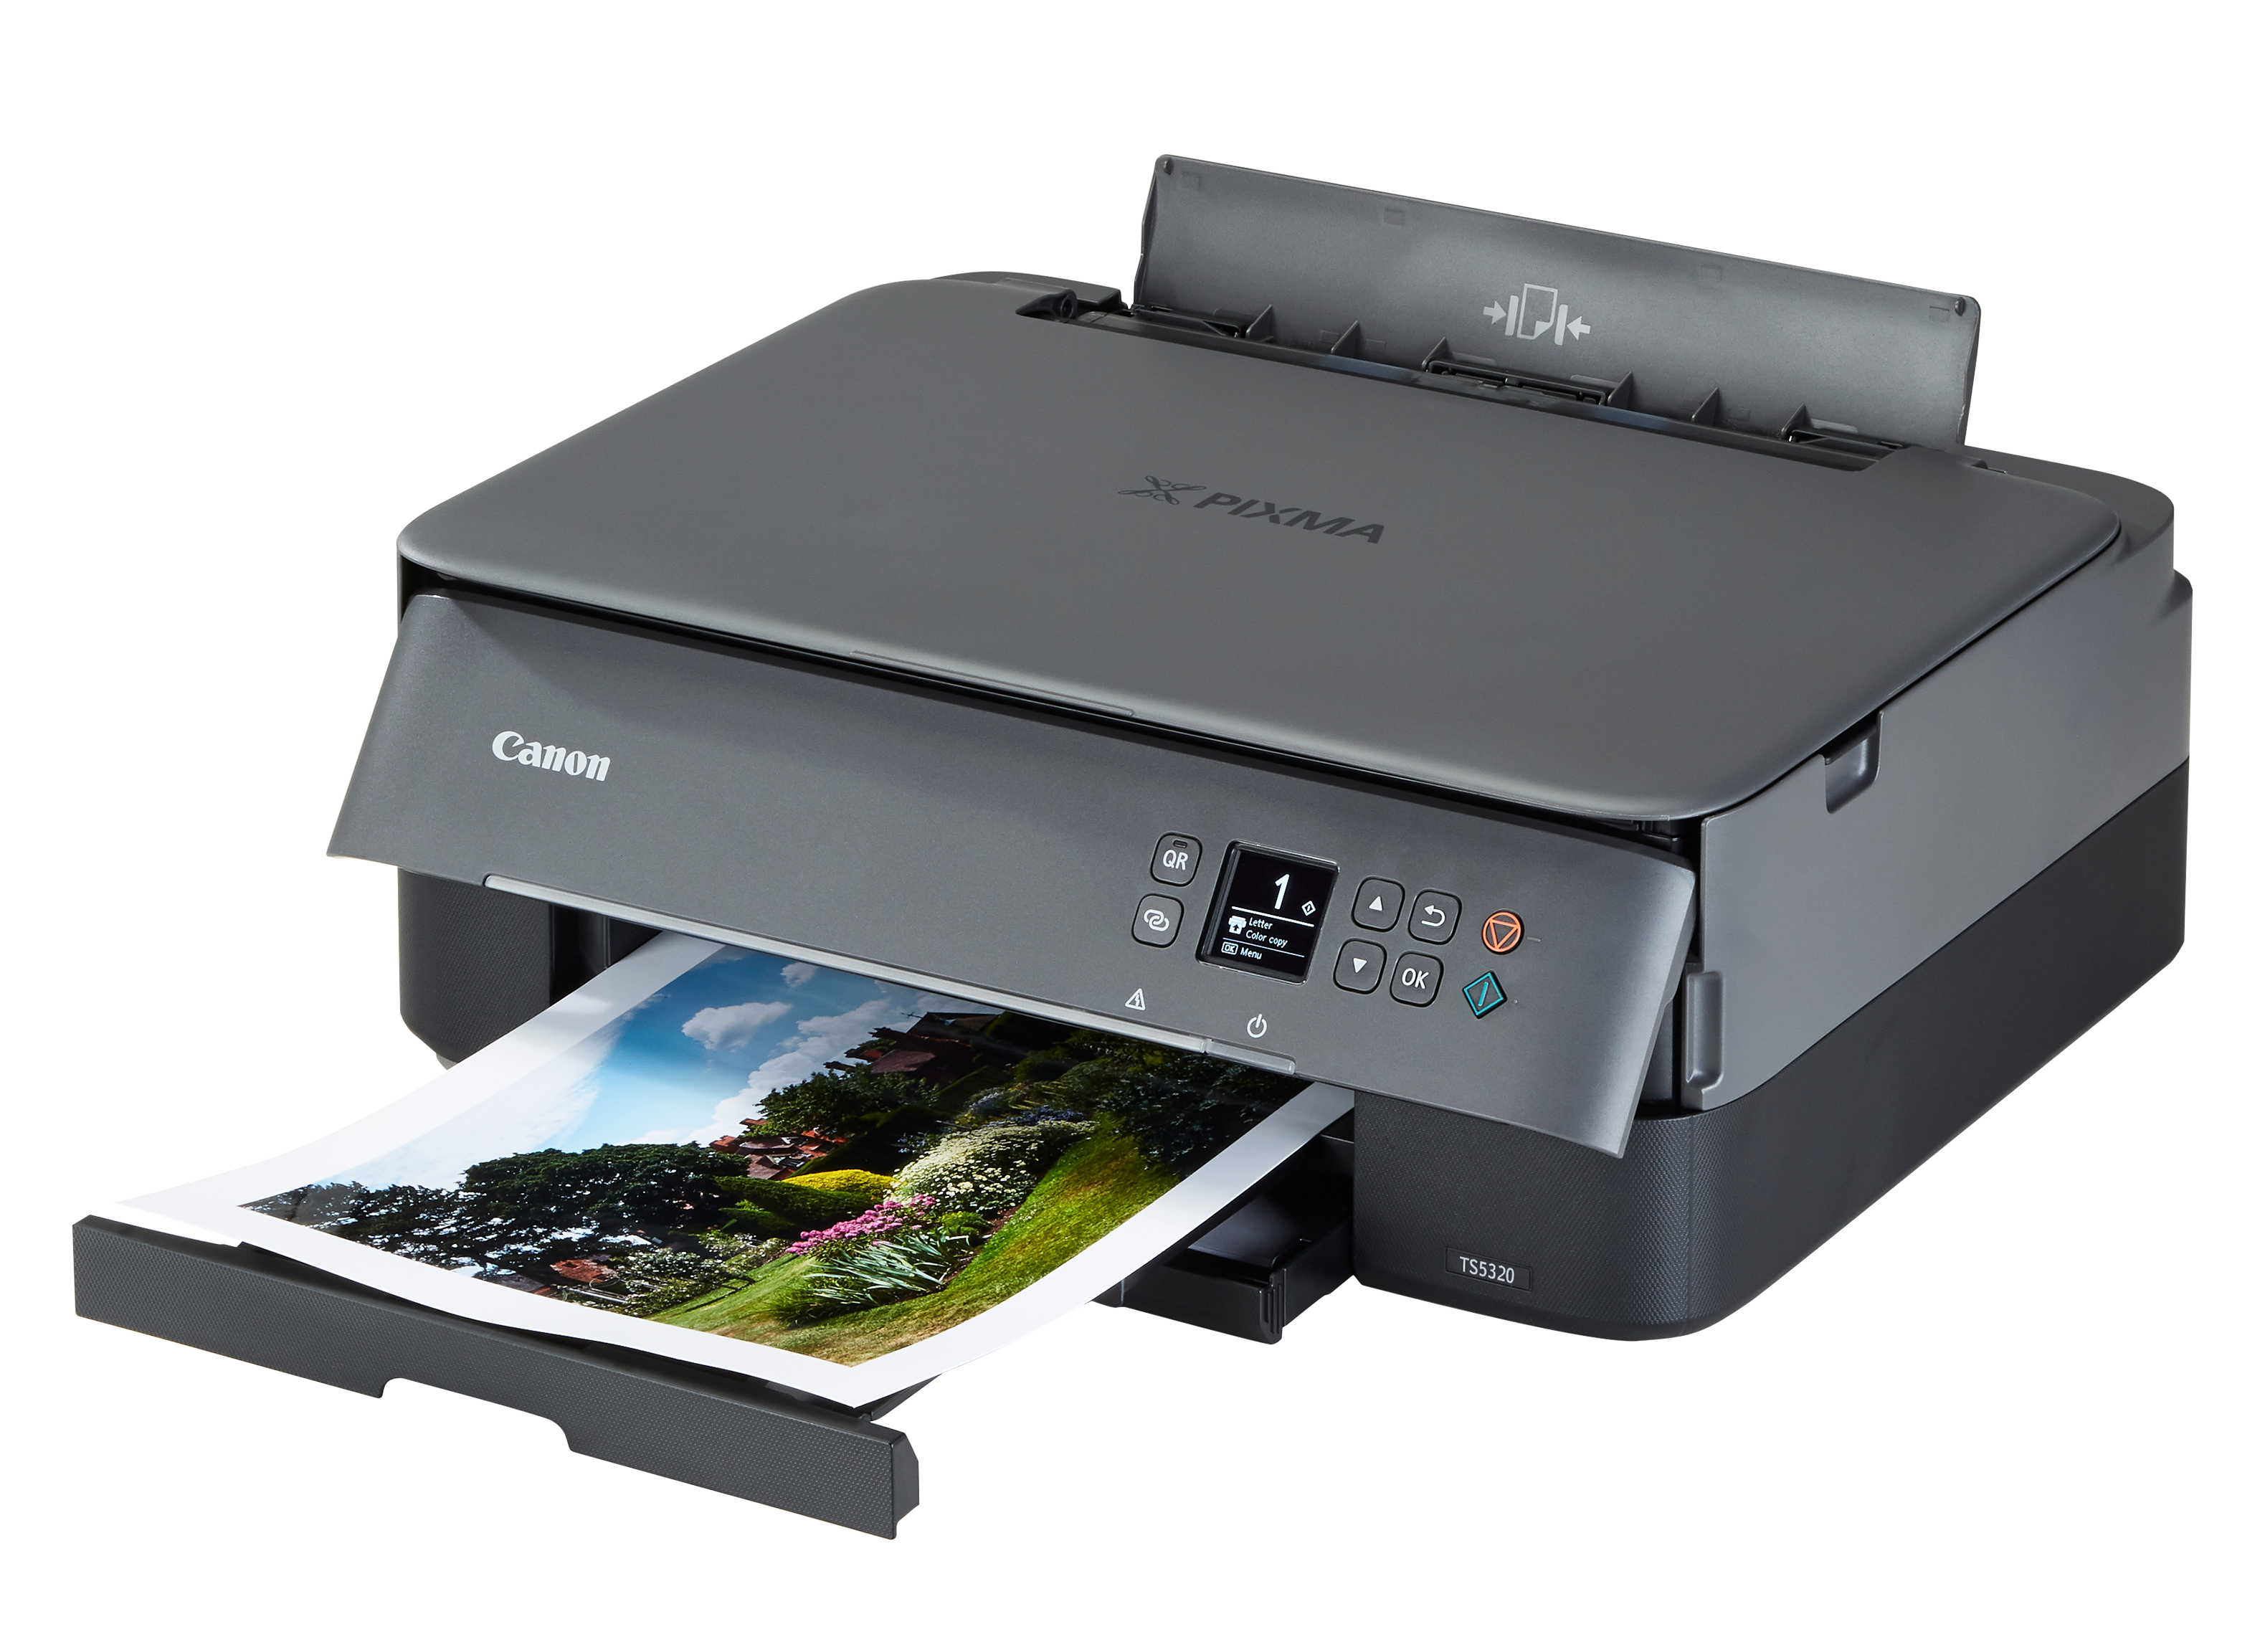 Canon Pixma TS3520 Printer Review - Consumer Reports